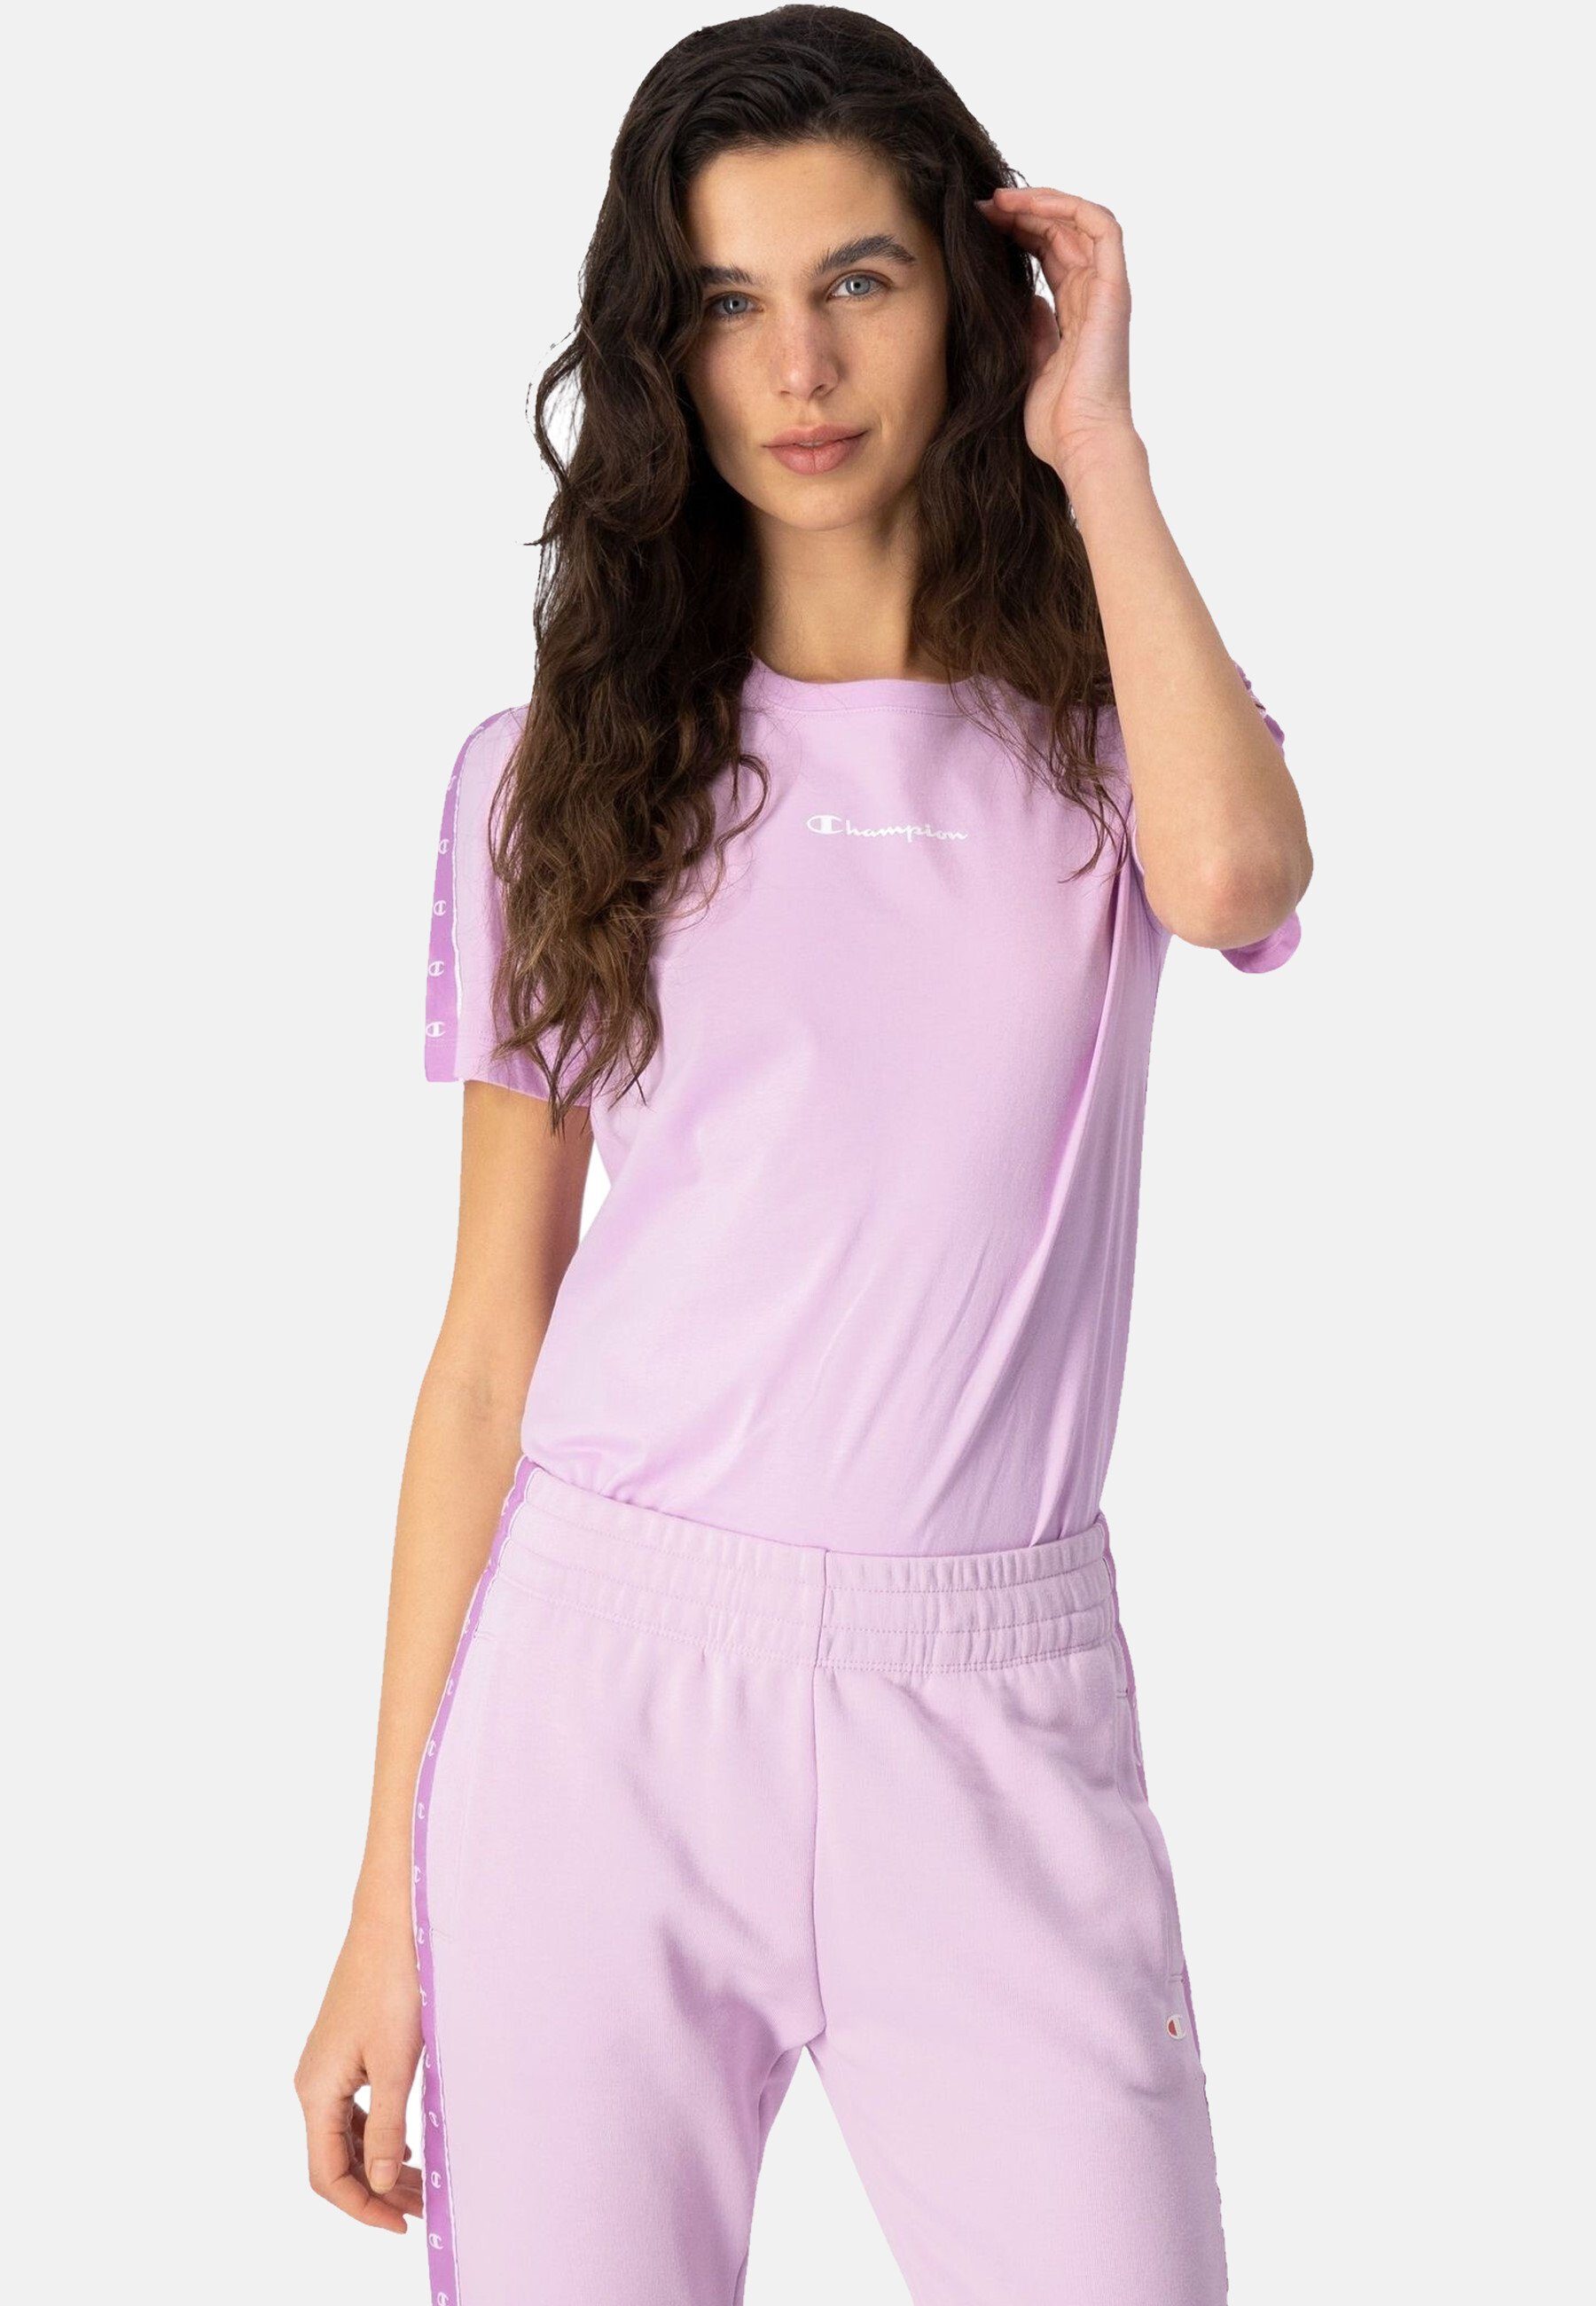 Champion T-Shirt Shirt Baumwolle aus Rundhals-T-Shirt pink mit